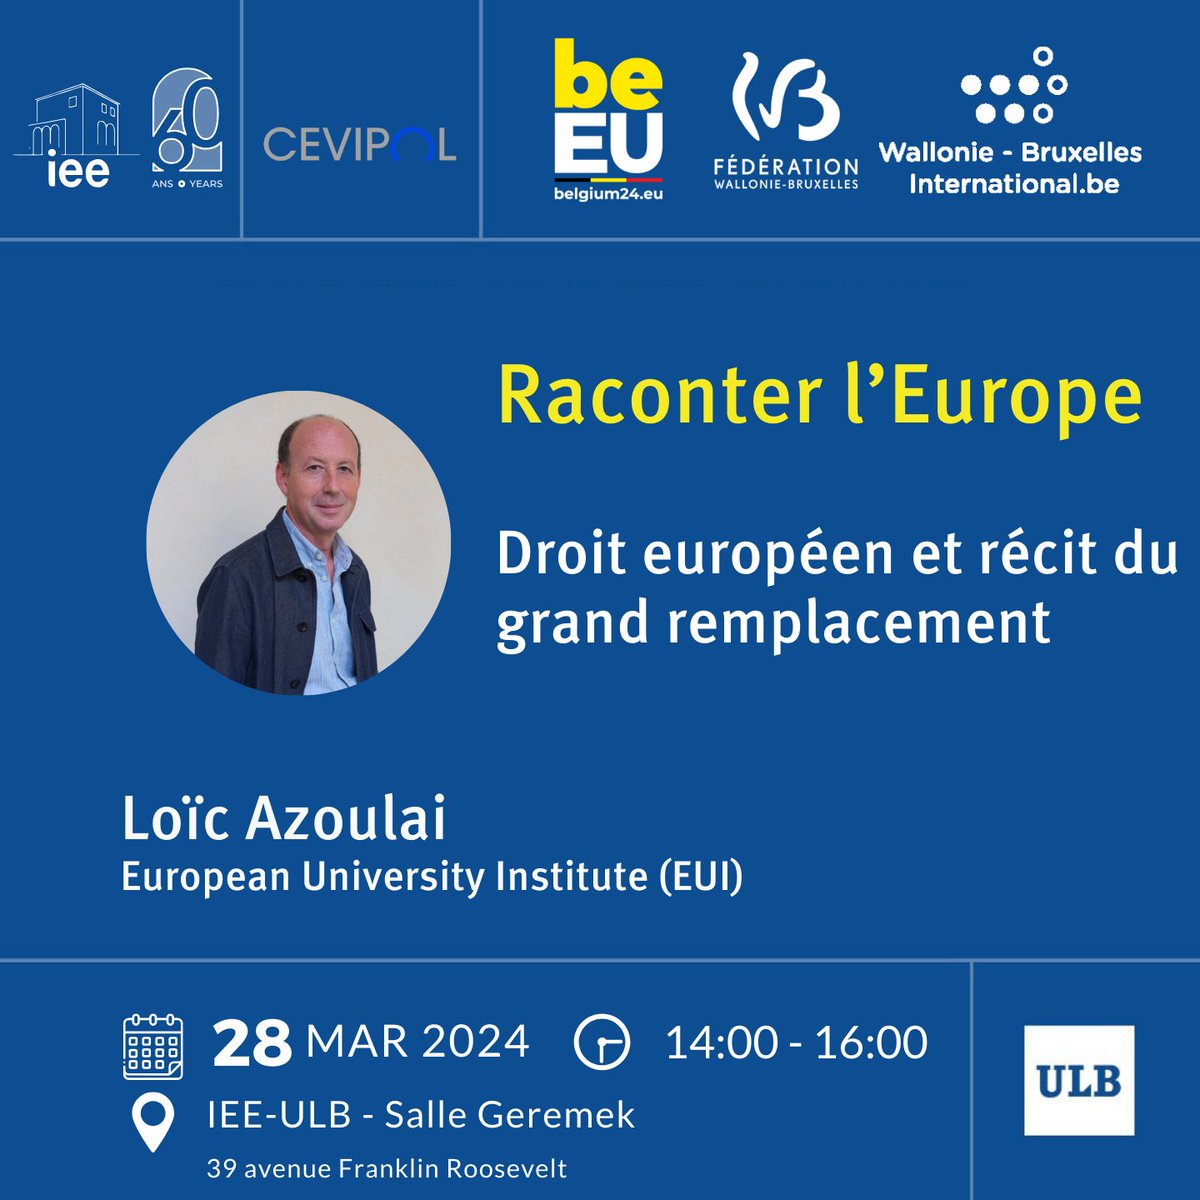 📆 A vos agendas : la semaine prochaine nous aurons le plaisir d’accueillir professeur Loïc Azoulai de l’Institut universitaire européen (EUI). Son cours est ouvert au public, inscrivez-vous ici➡ bit.ly/4ak2HnA @EUI_EU #EU2024BE